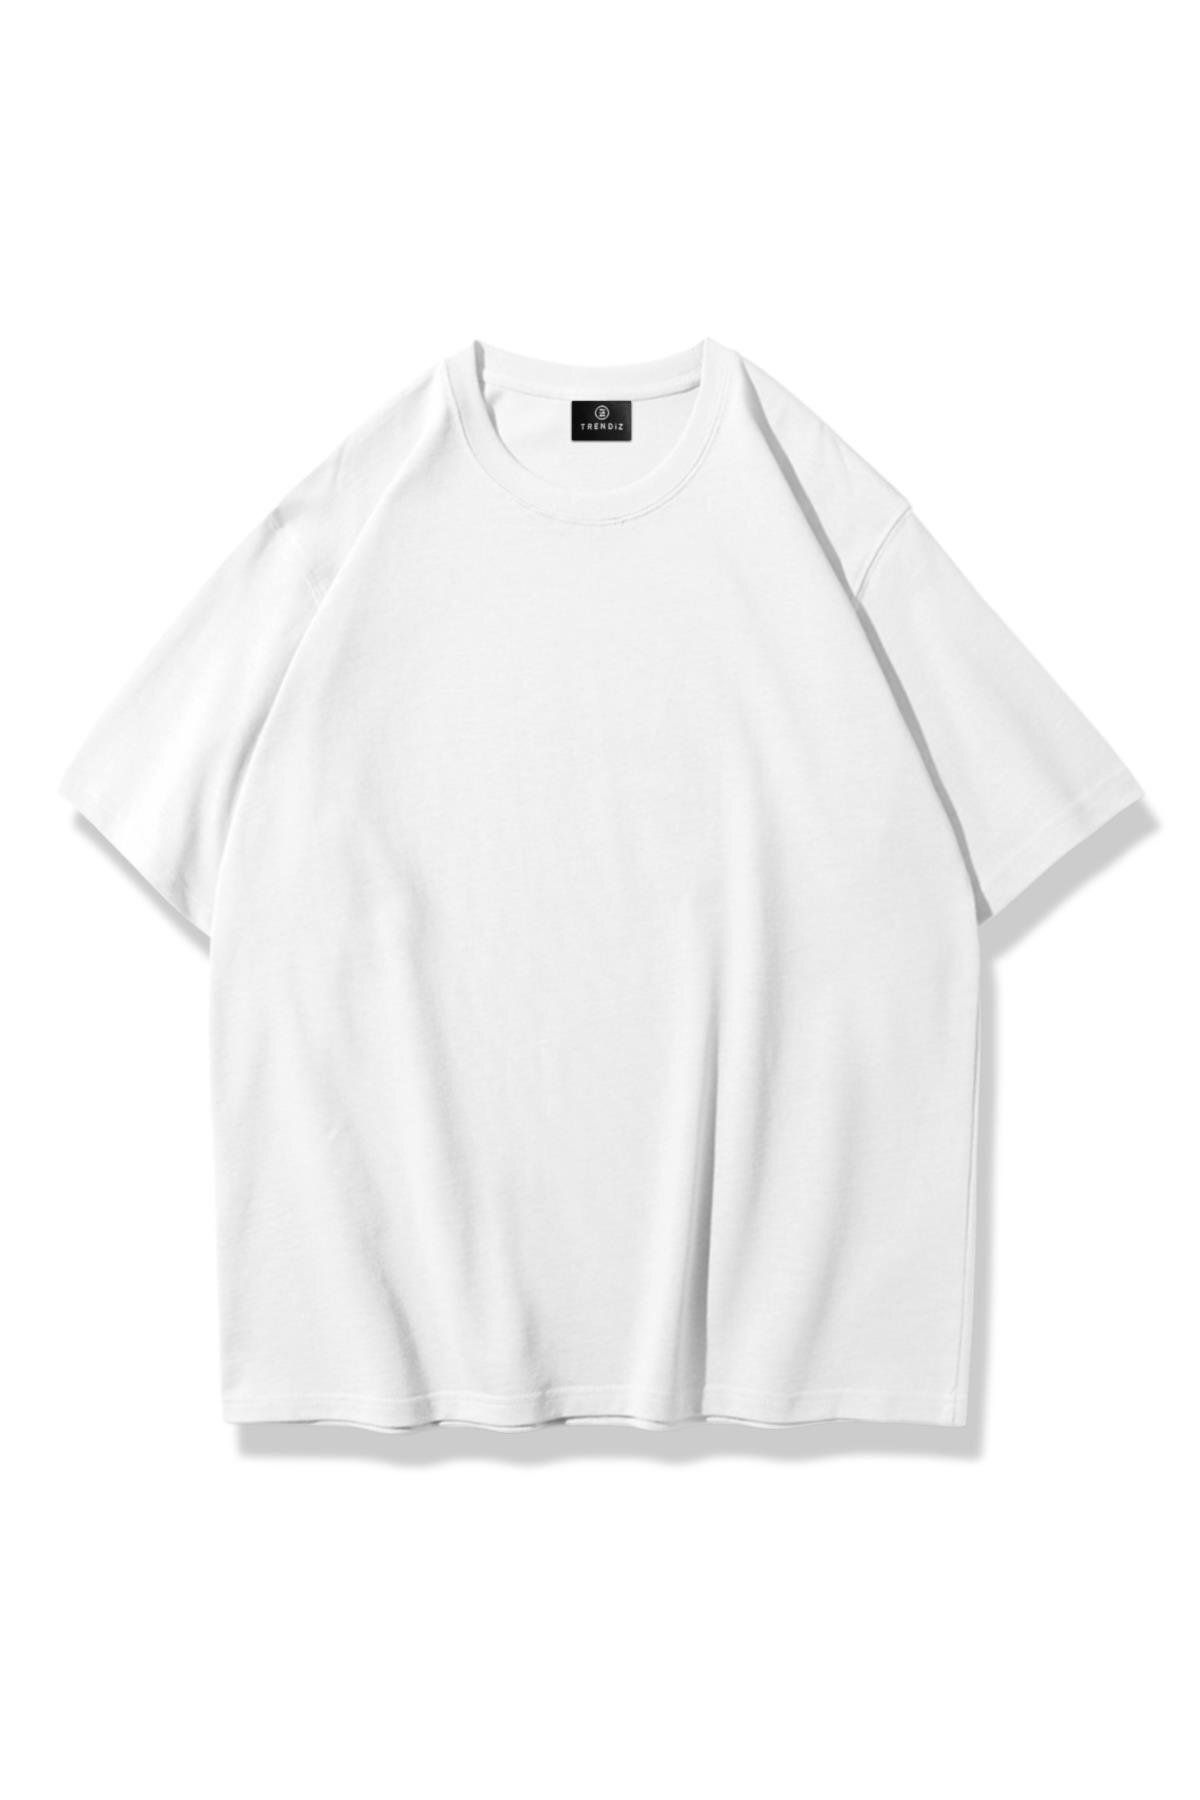 Trendiz Unisex Beyaz Basic Tshirt